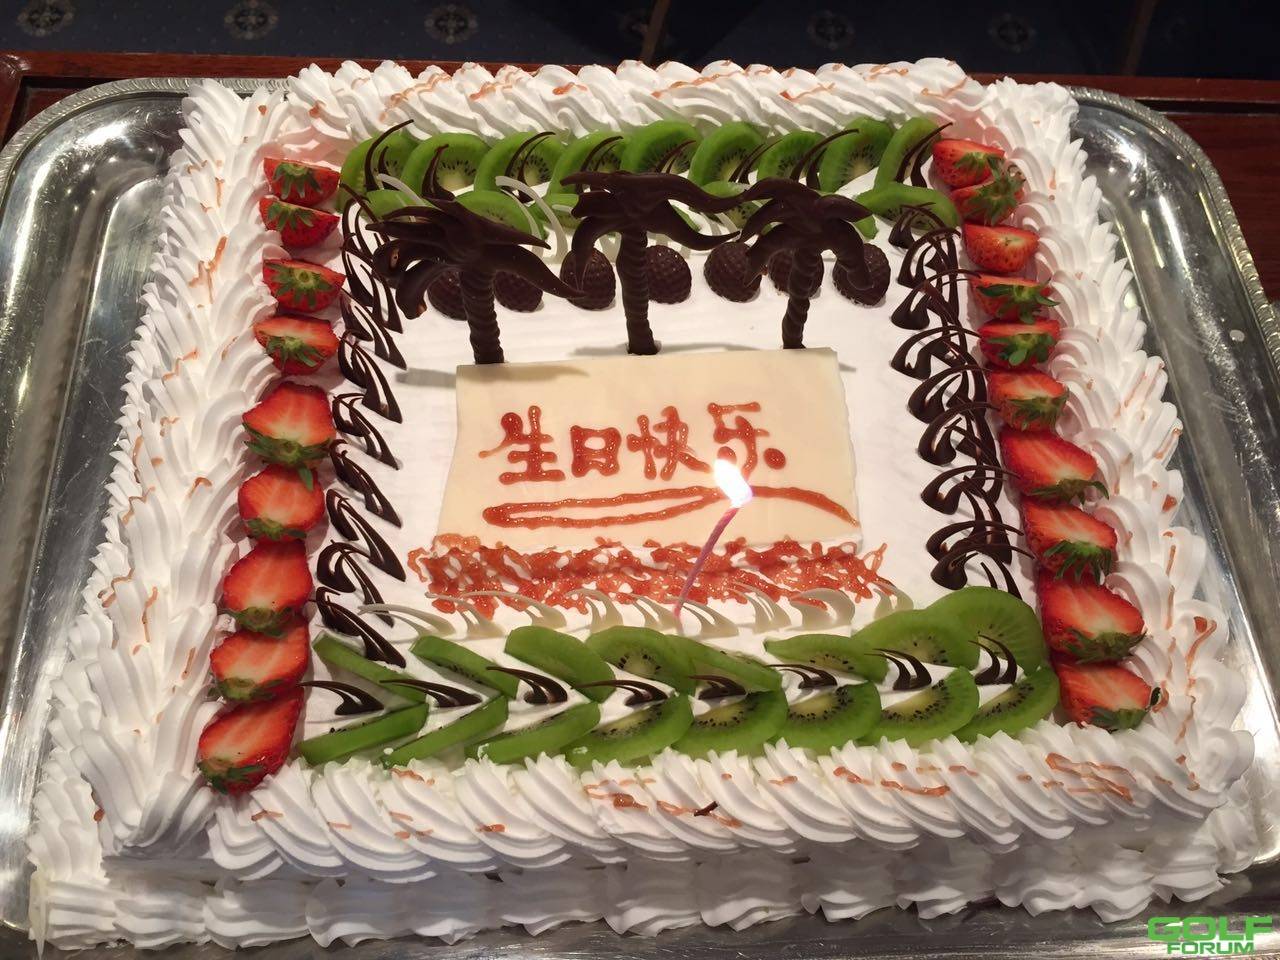 2015年莲花山高尔夫球会第一季度员工生日会